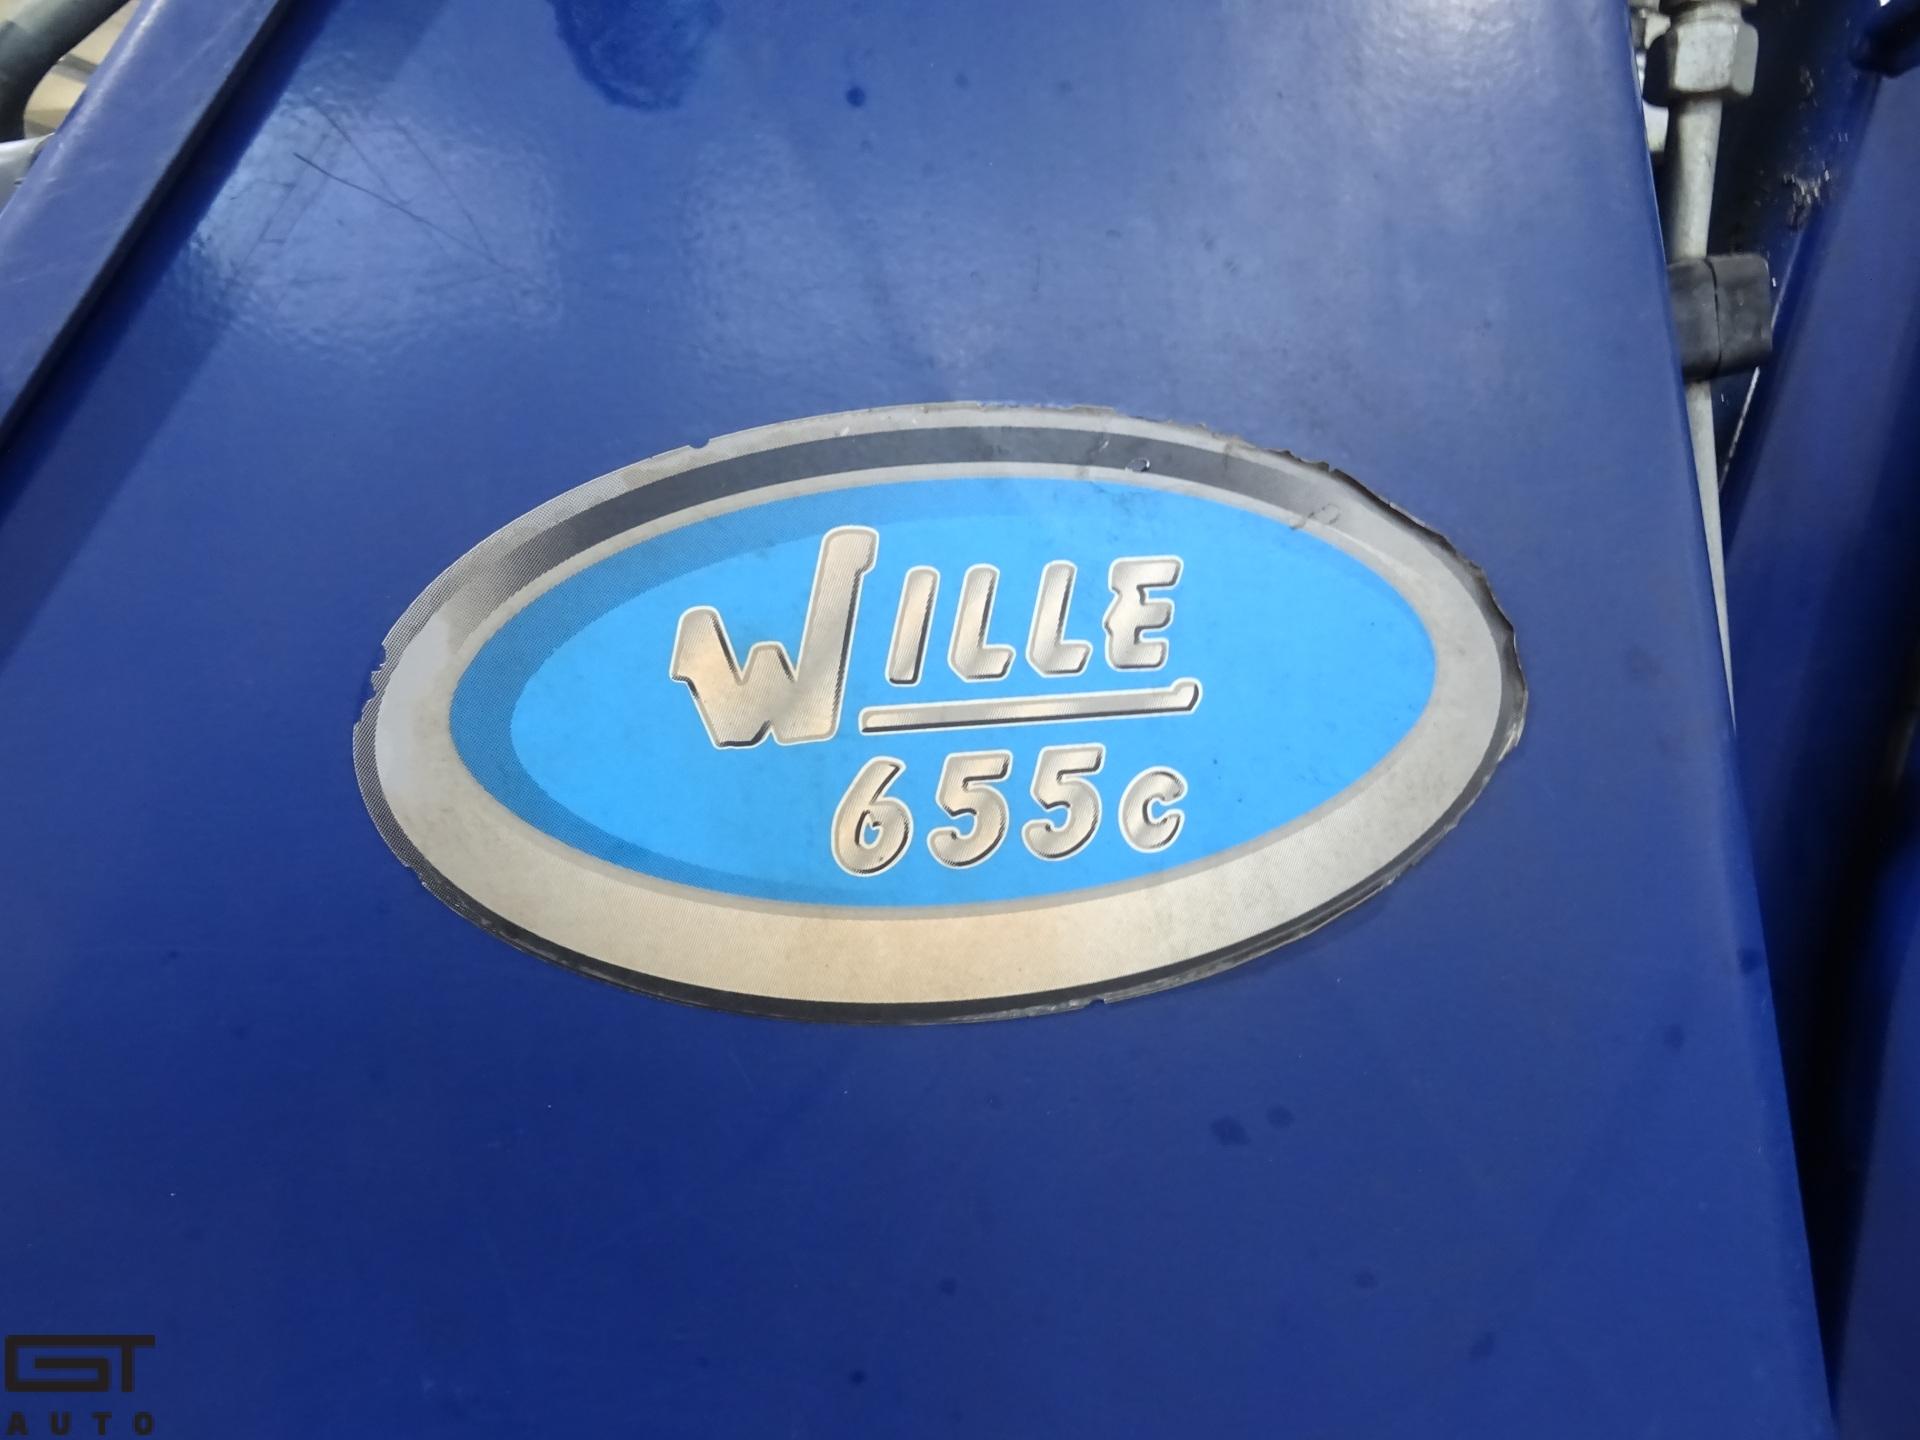 Wille 655c